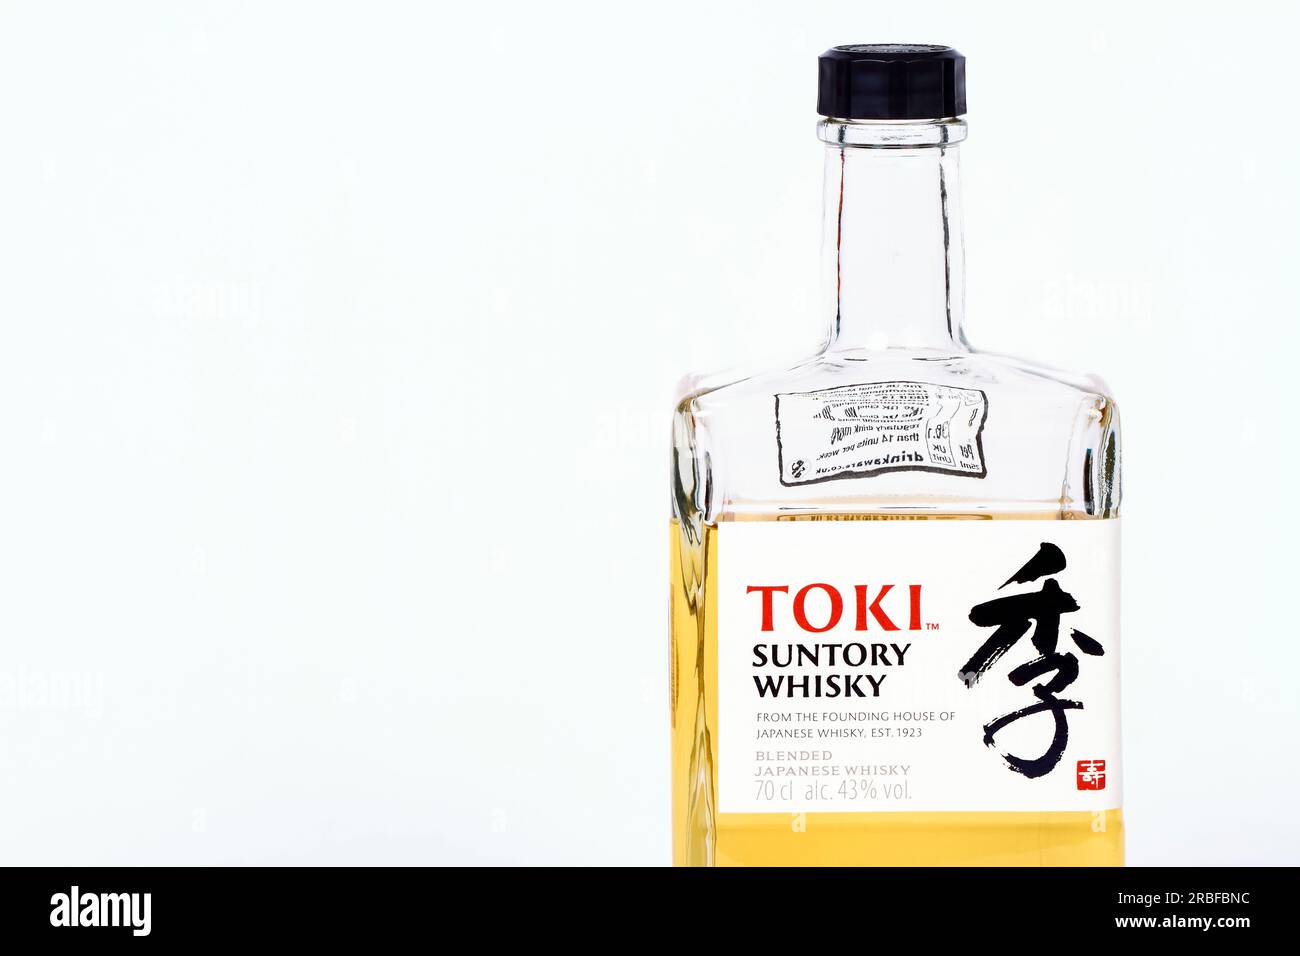 TOKI Suntory Japanese blended whisky Stock Photo